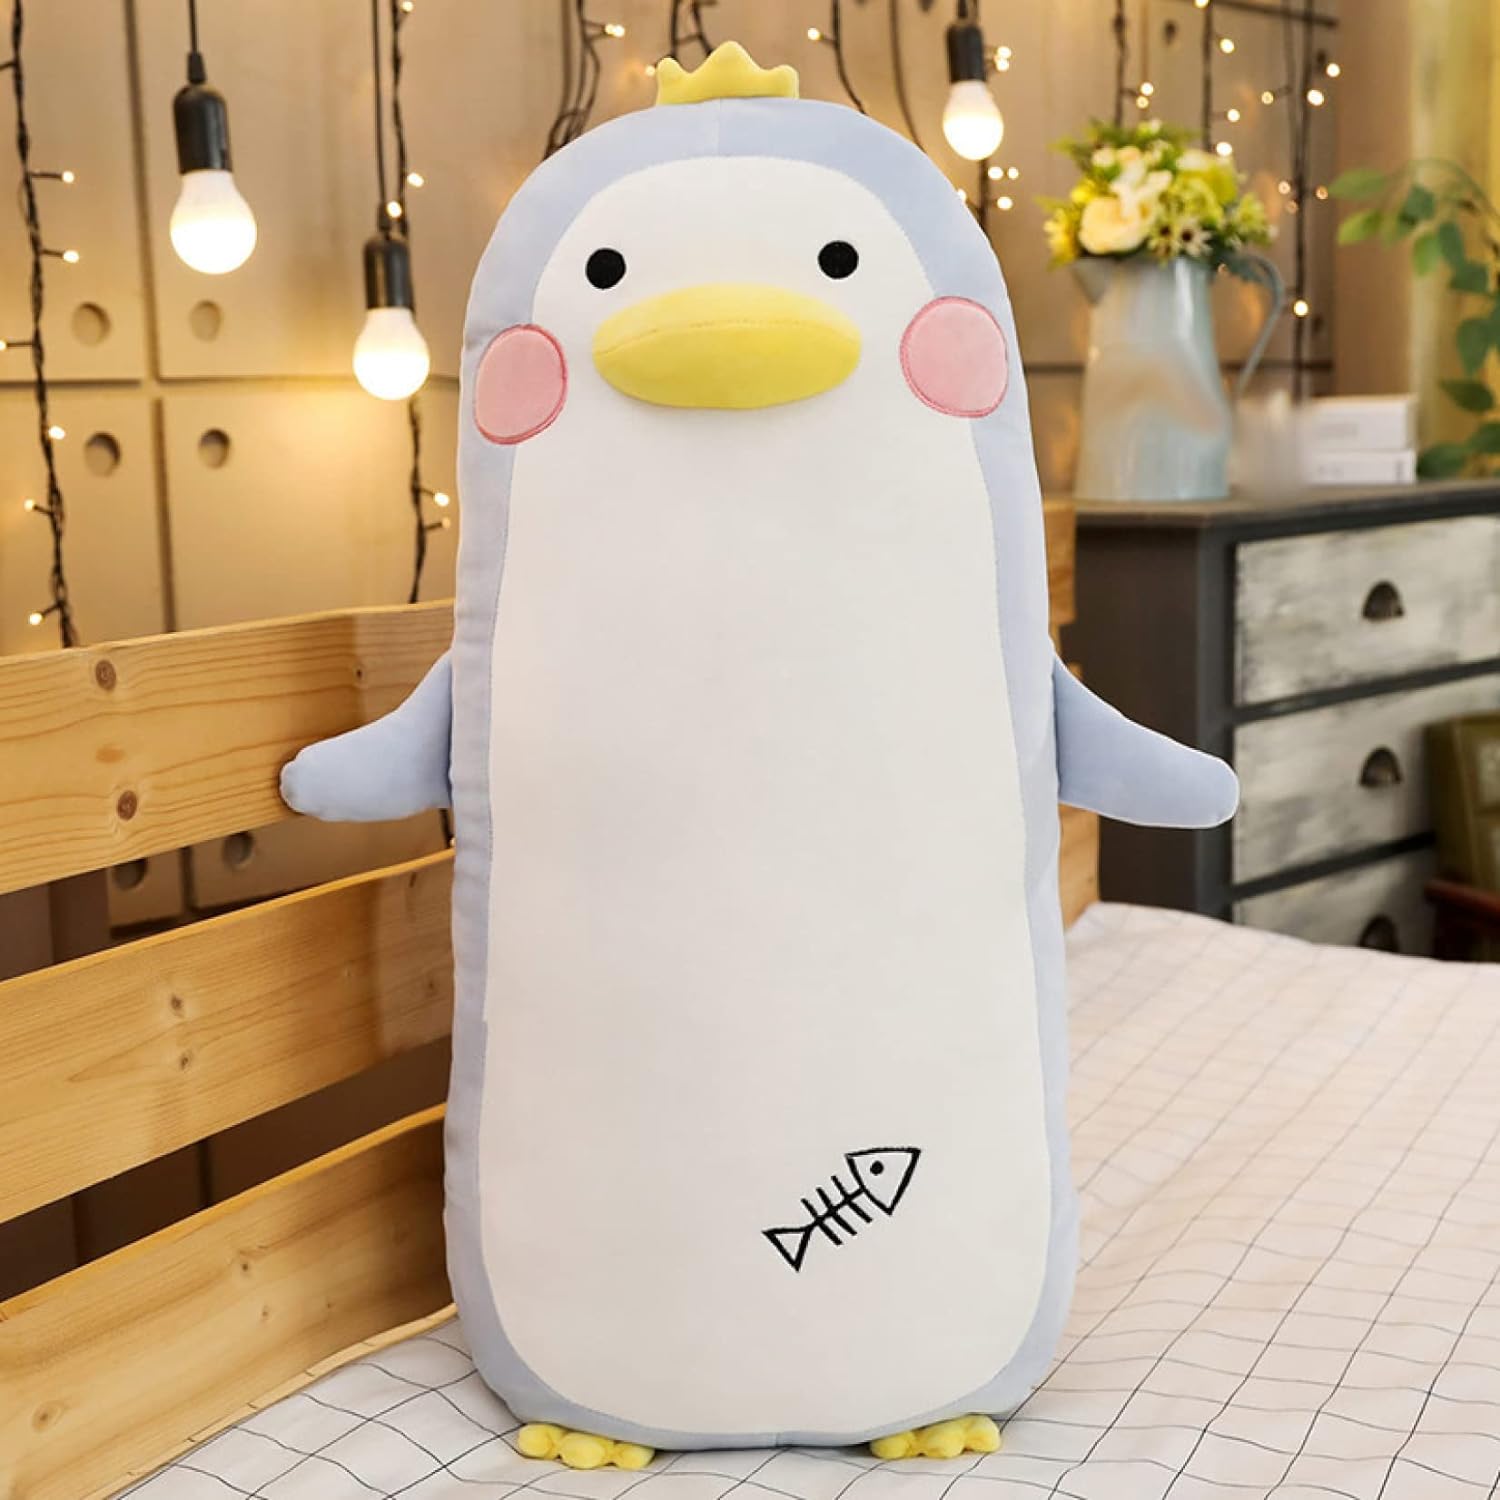 ペンギン 抱き枕 ペンギン ぬいぐるみ 特大 ペンギン 巨大 人形 クッションもこもこ 様式1 柔らかい ロング枕 洗える 低反発 添い寝枕